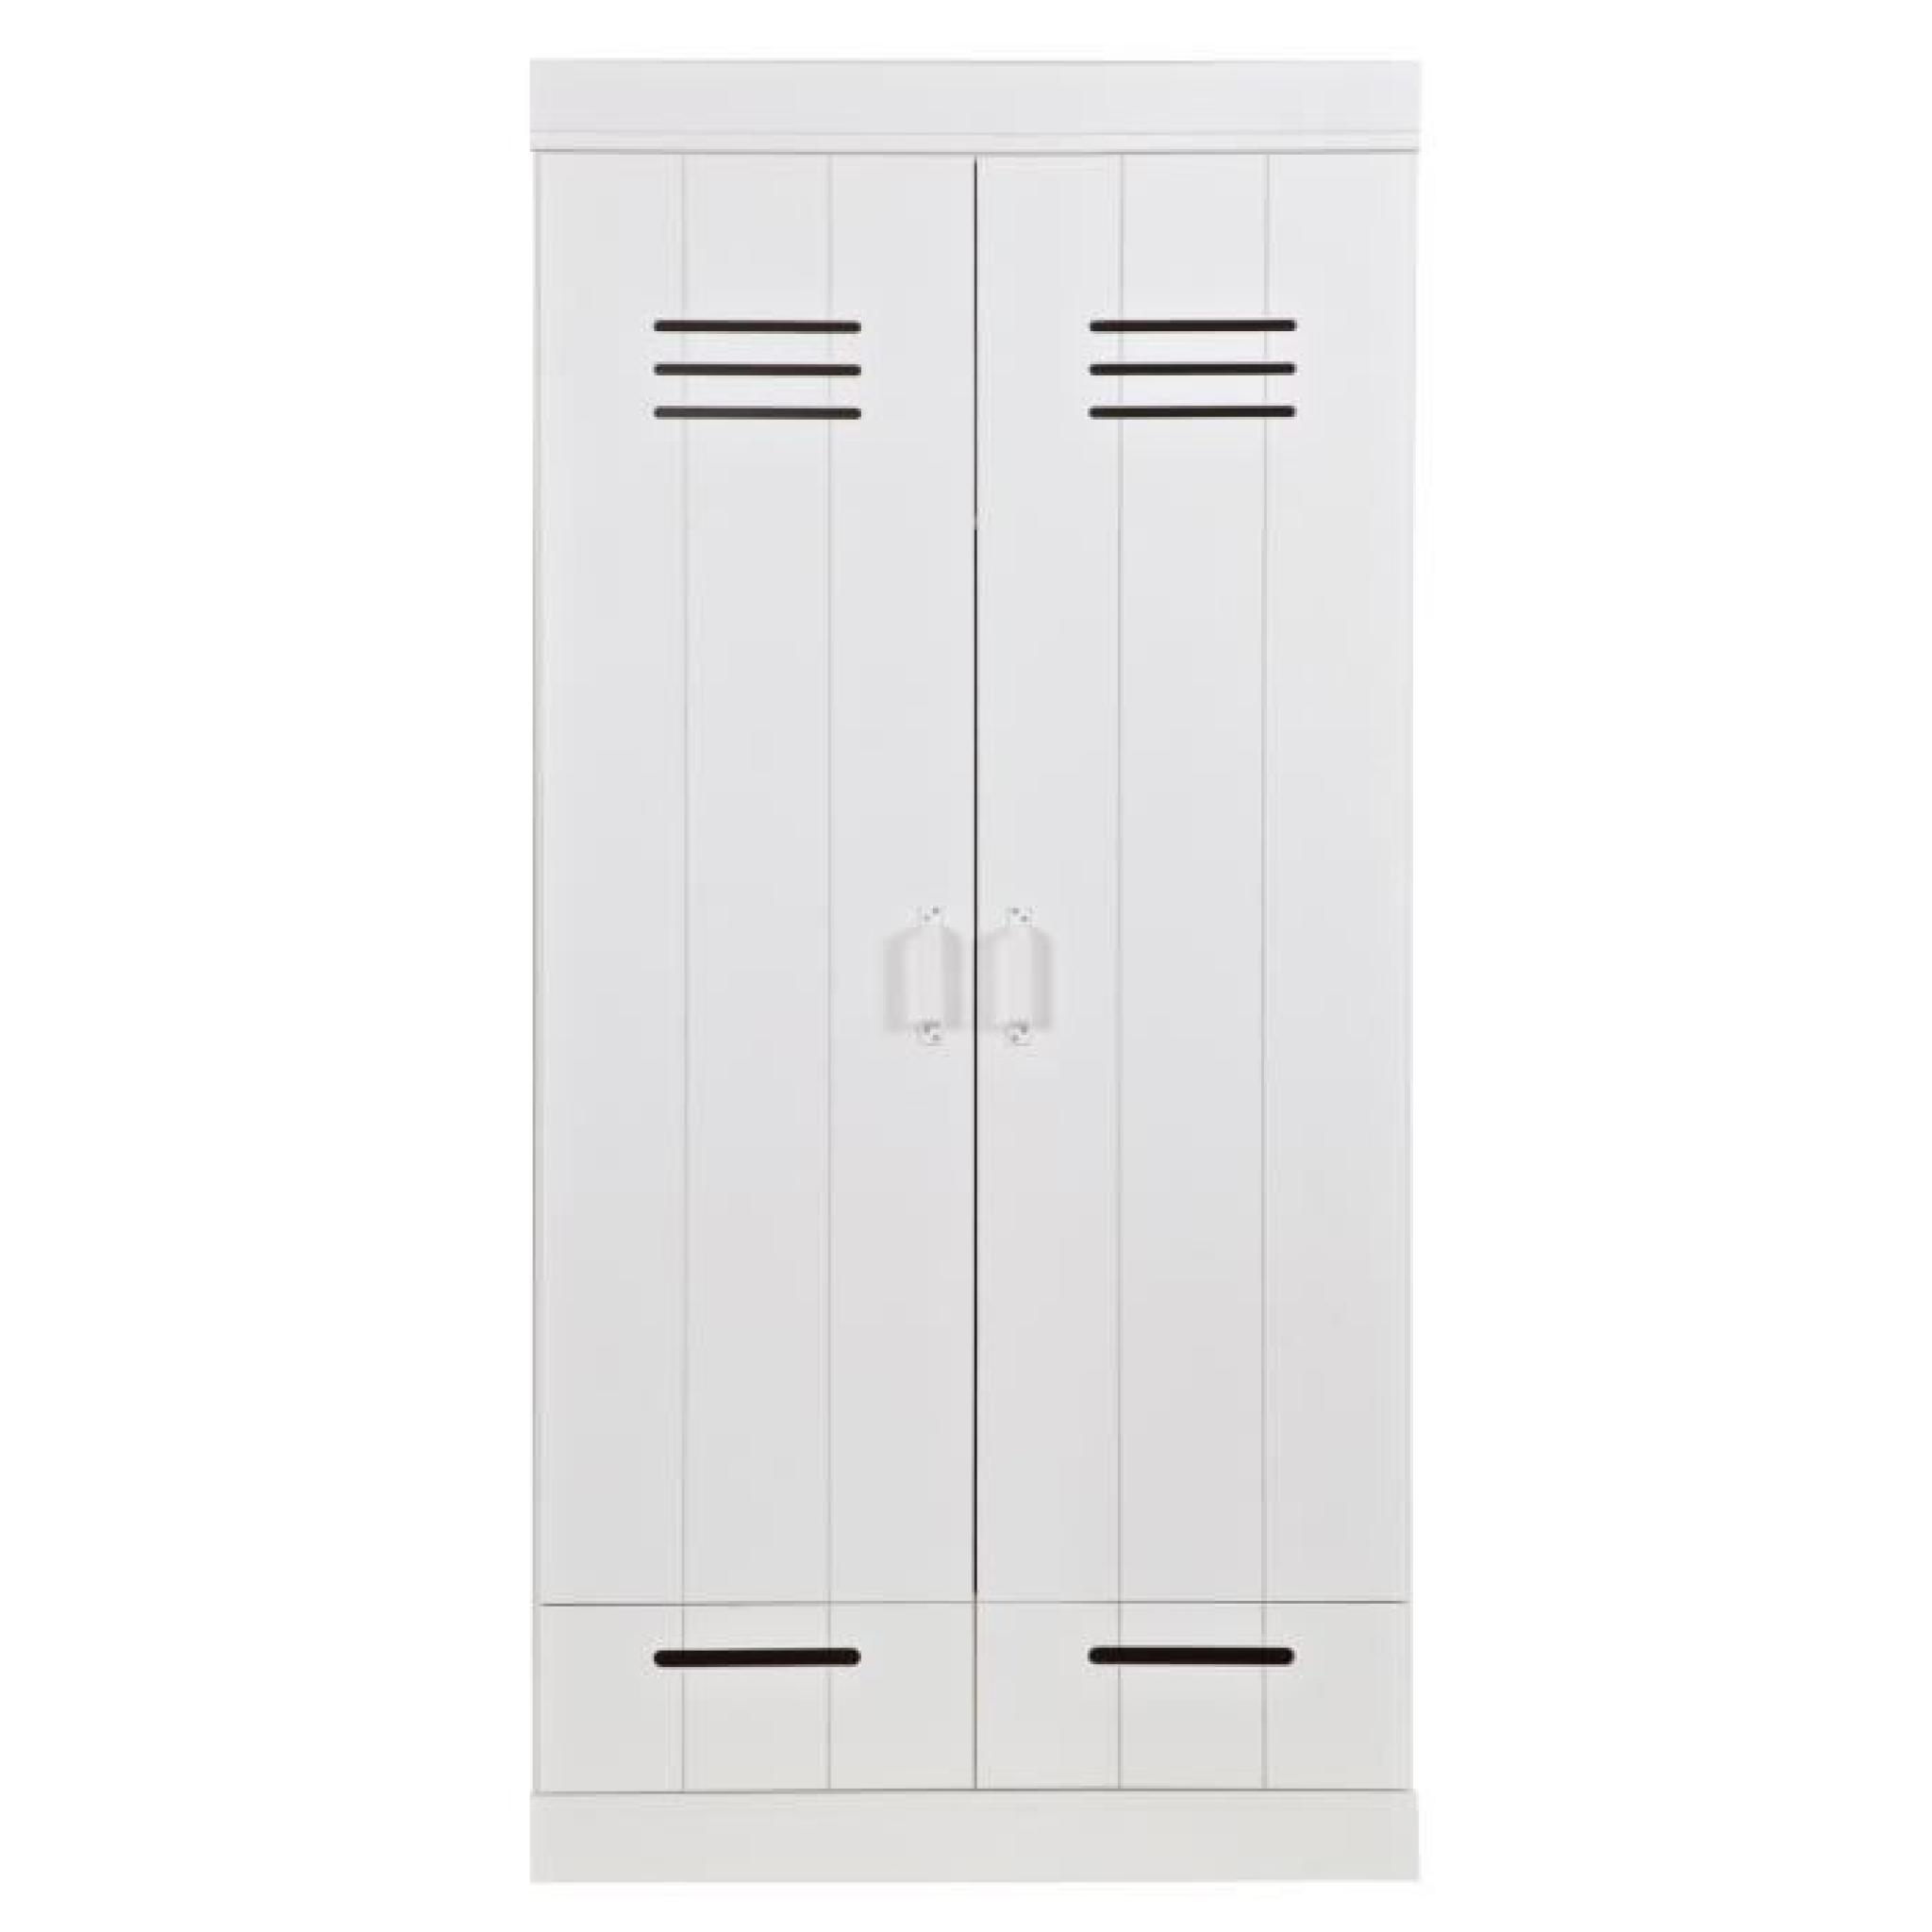 Armoire blanche avec 2 portes + 2 tiroirs en pin massif, H195 x L94 x P53 cm